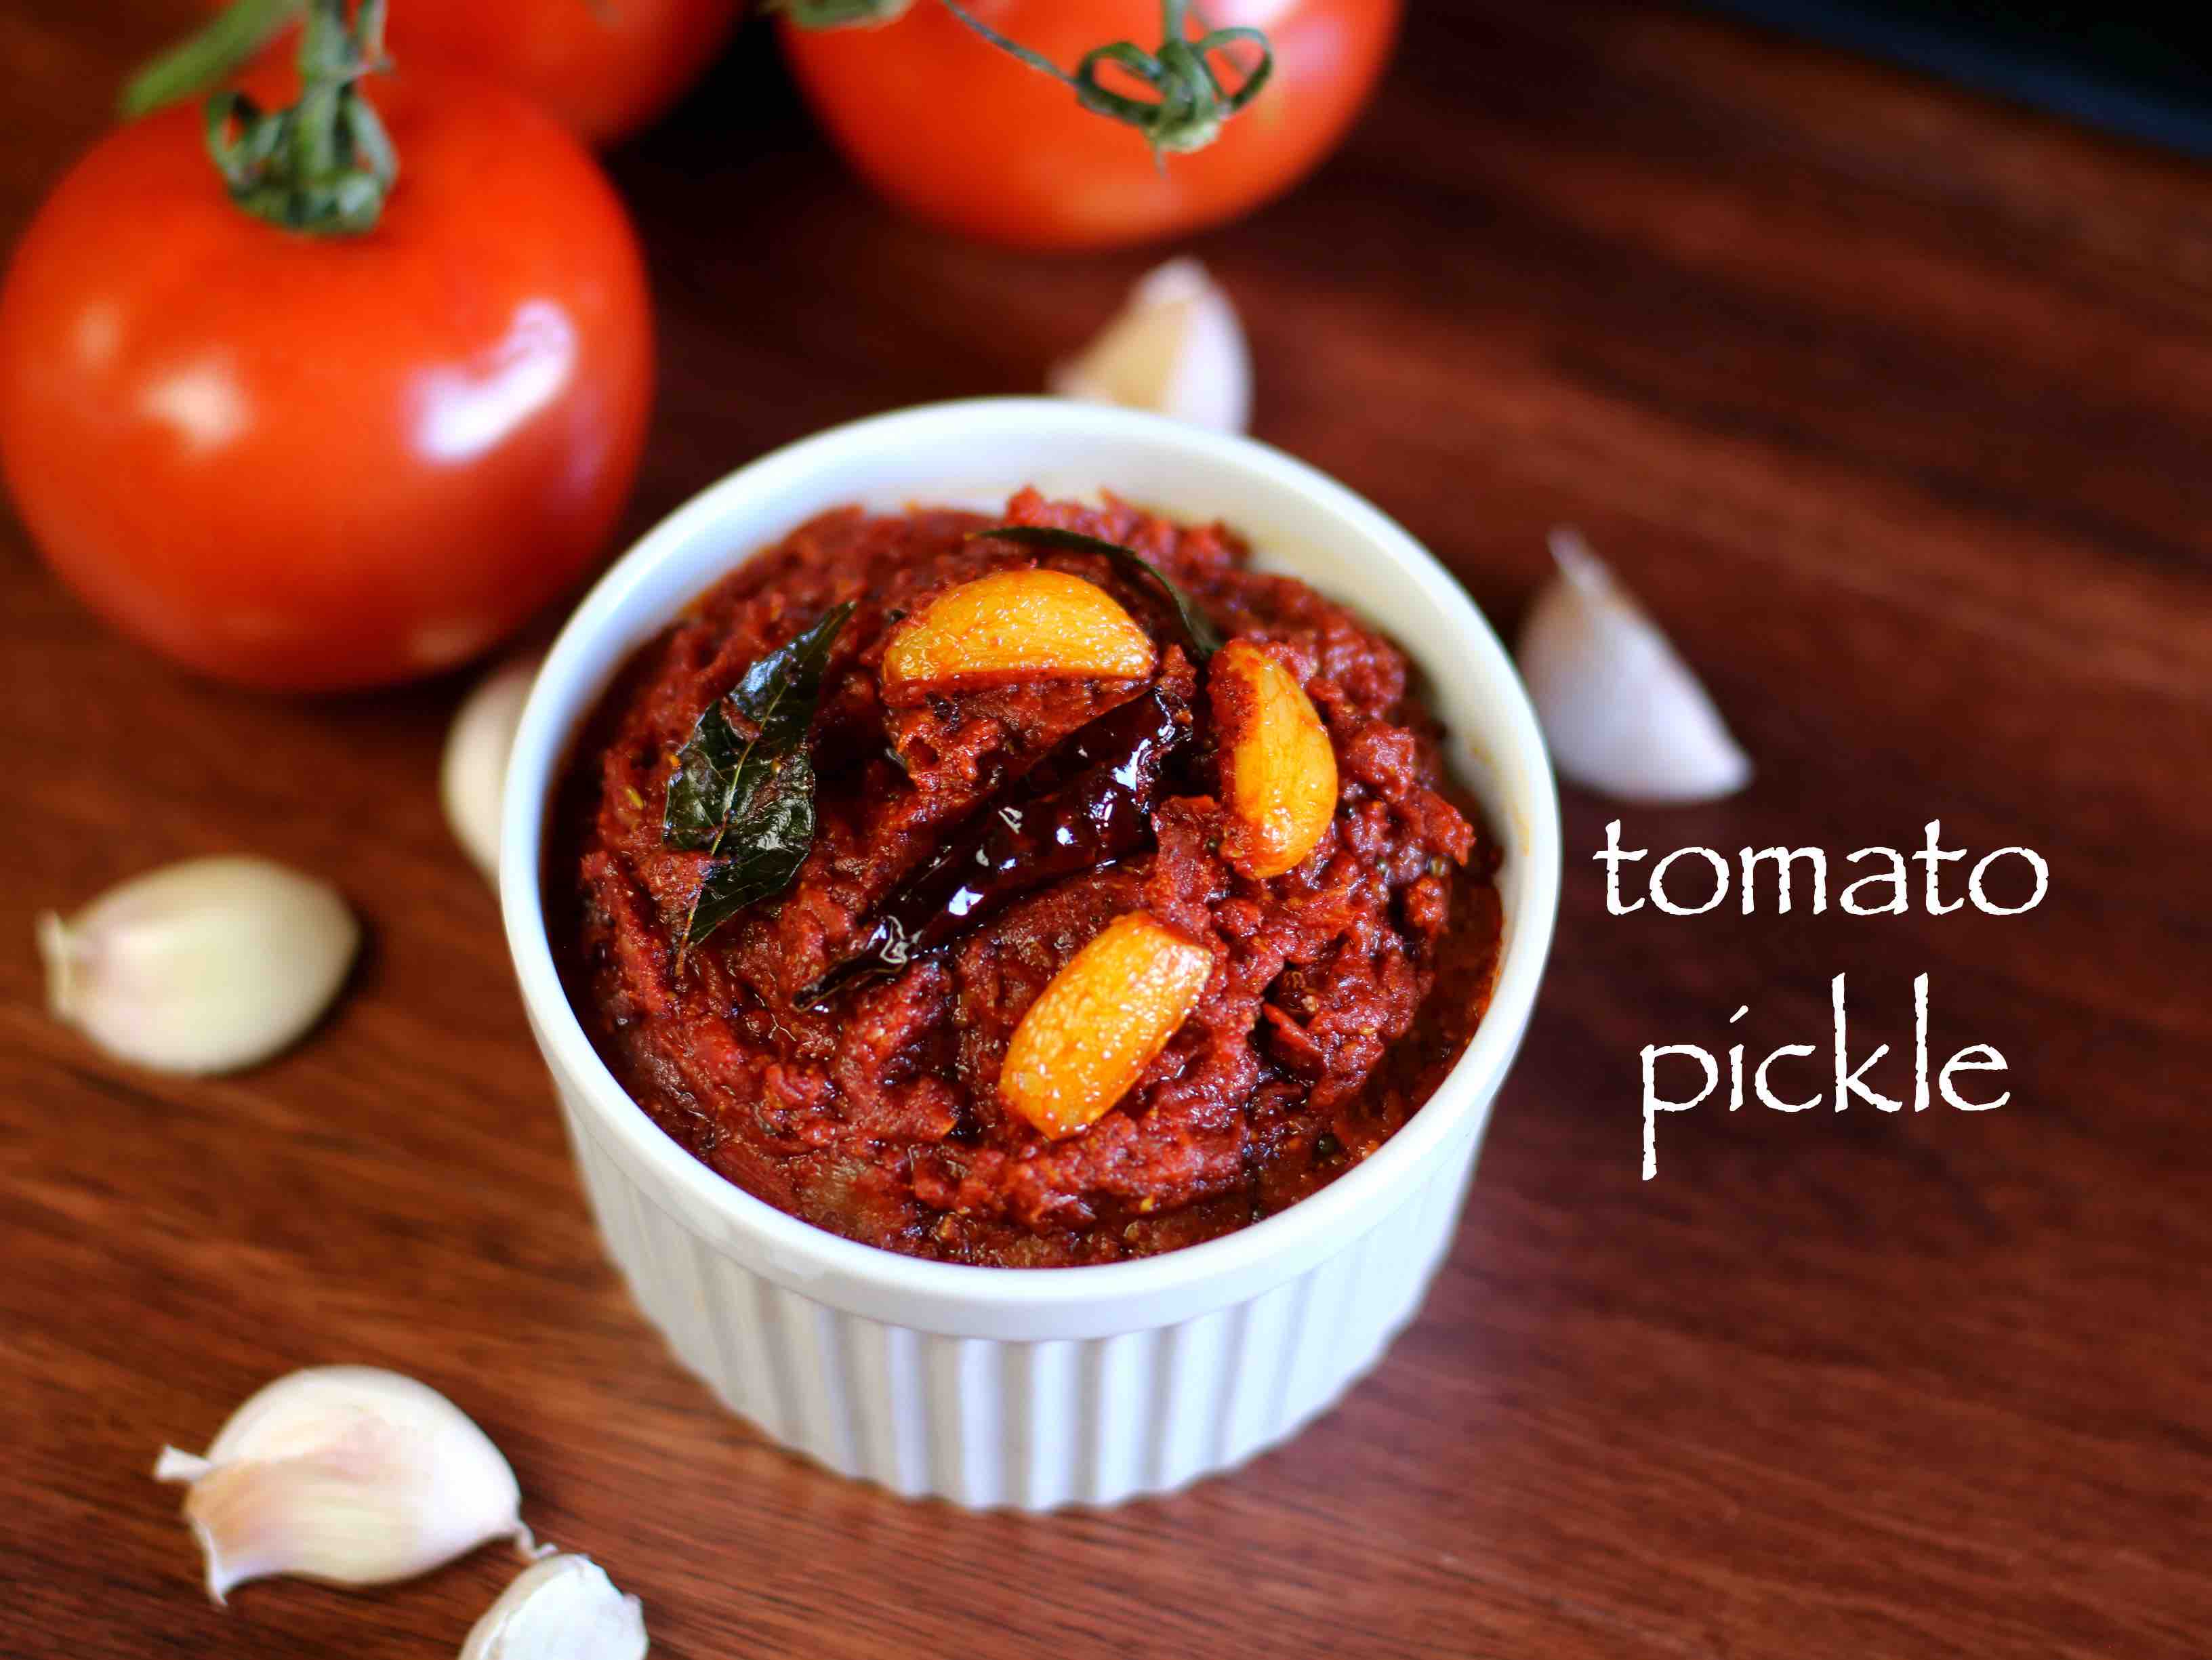 tomato pickle recipe | tomato pachadi recipe | tomato achar recipe